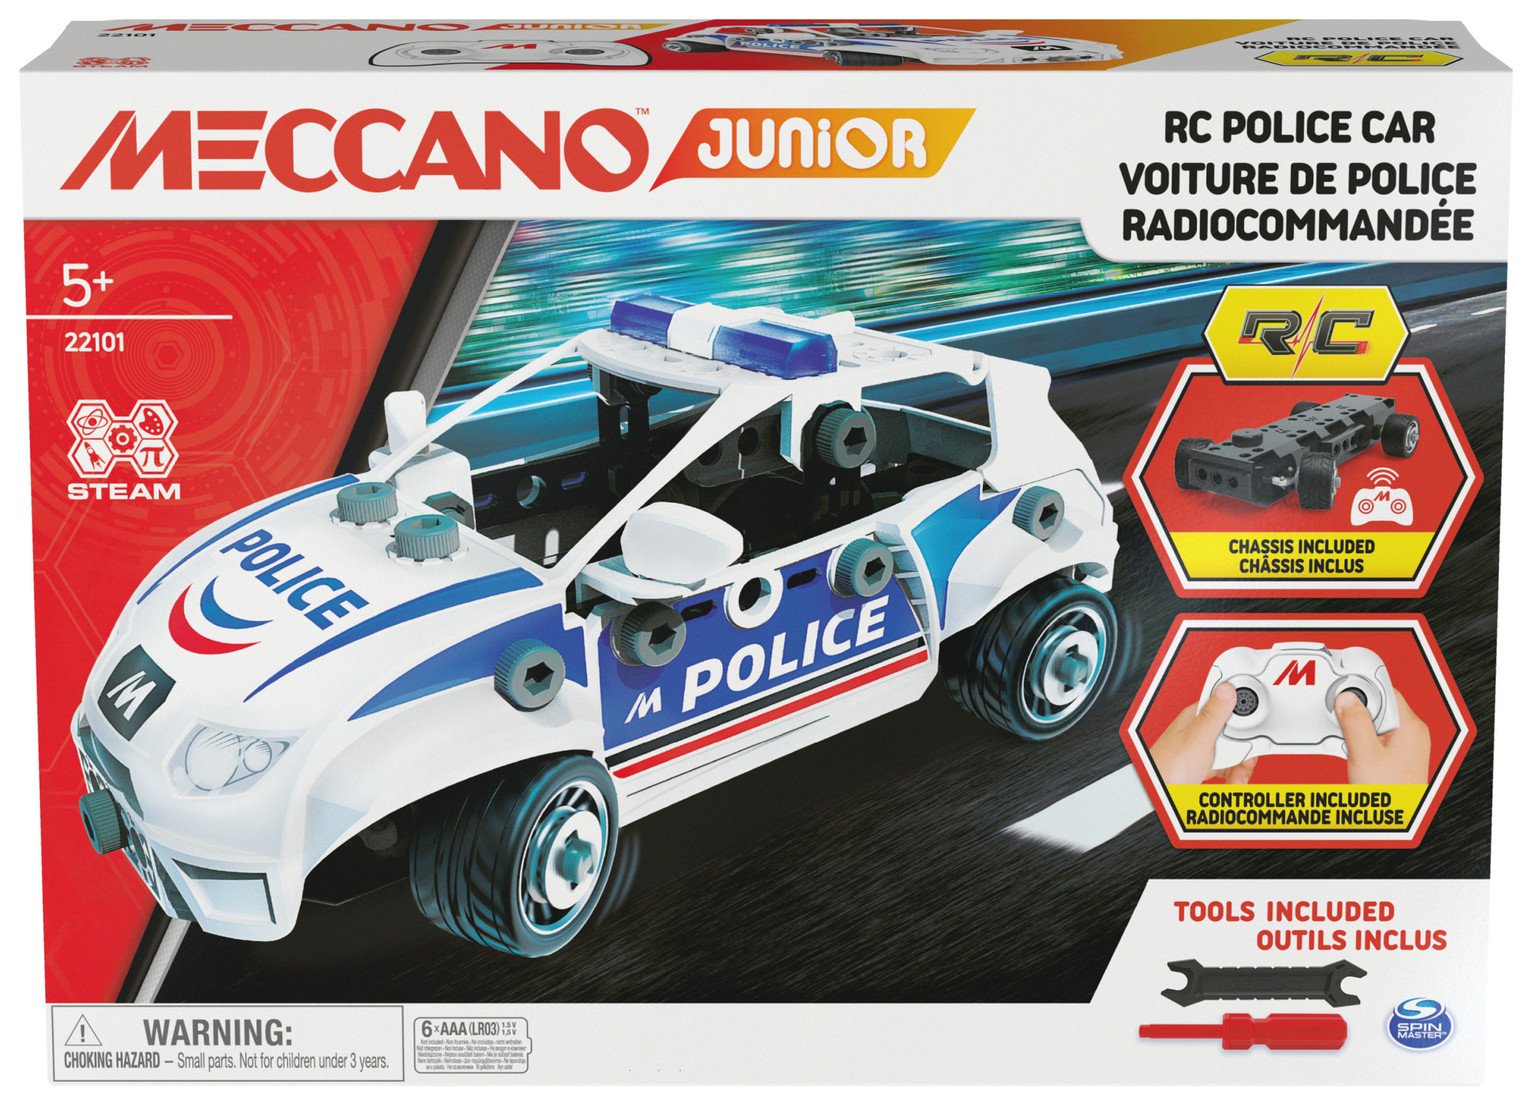 Meccano Junior Remote Control Police Car review